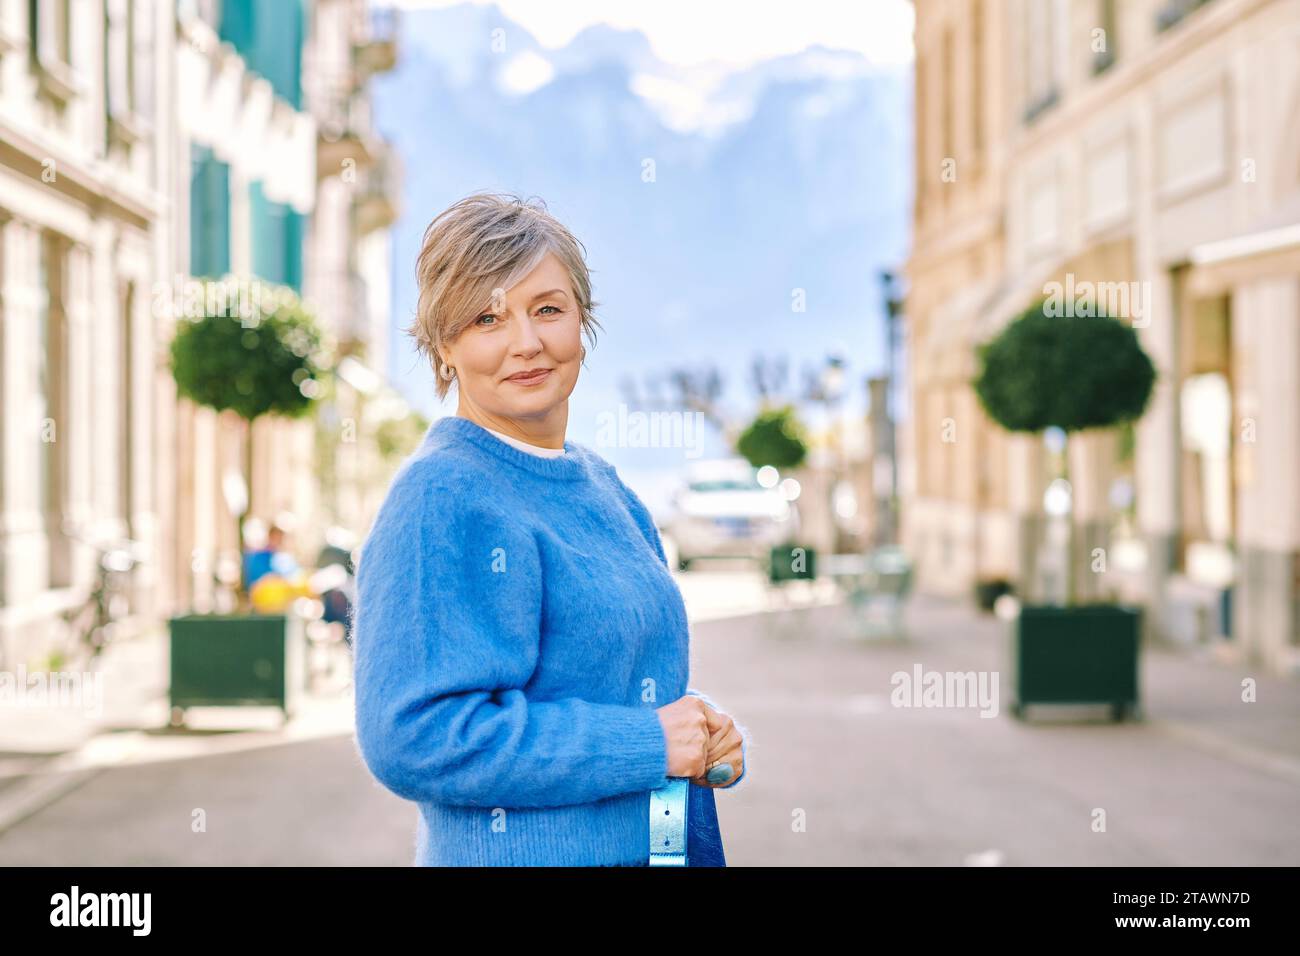 Portrait en plein air de belle femme d'âge moyen 55 - 60 ans posant à l'extérieur, portant un pull-over bleu Banque D'Images